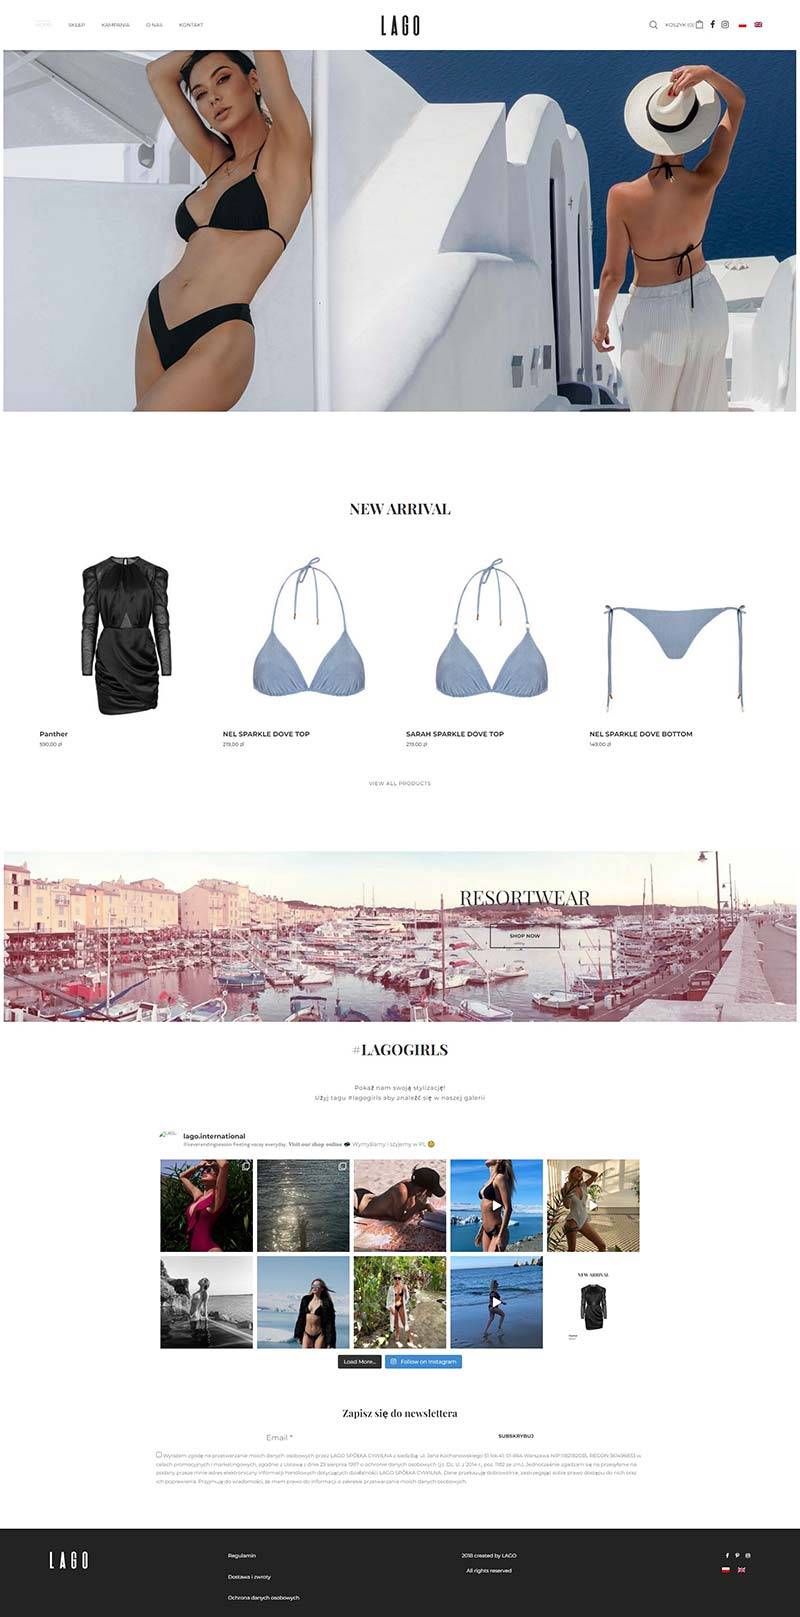 LAGO 波兰沙滩泳衣品牌购物网站